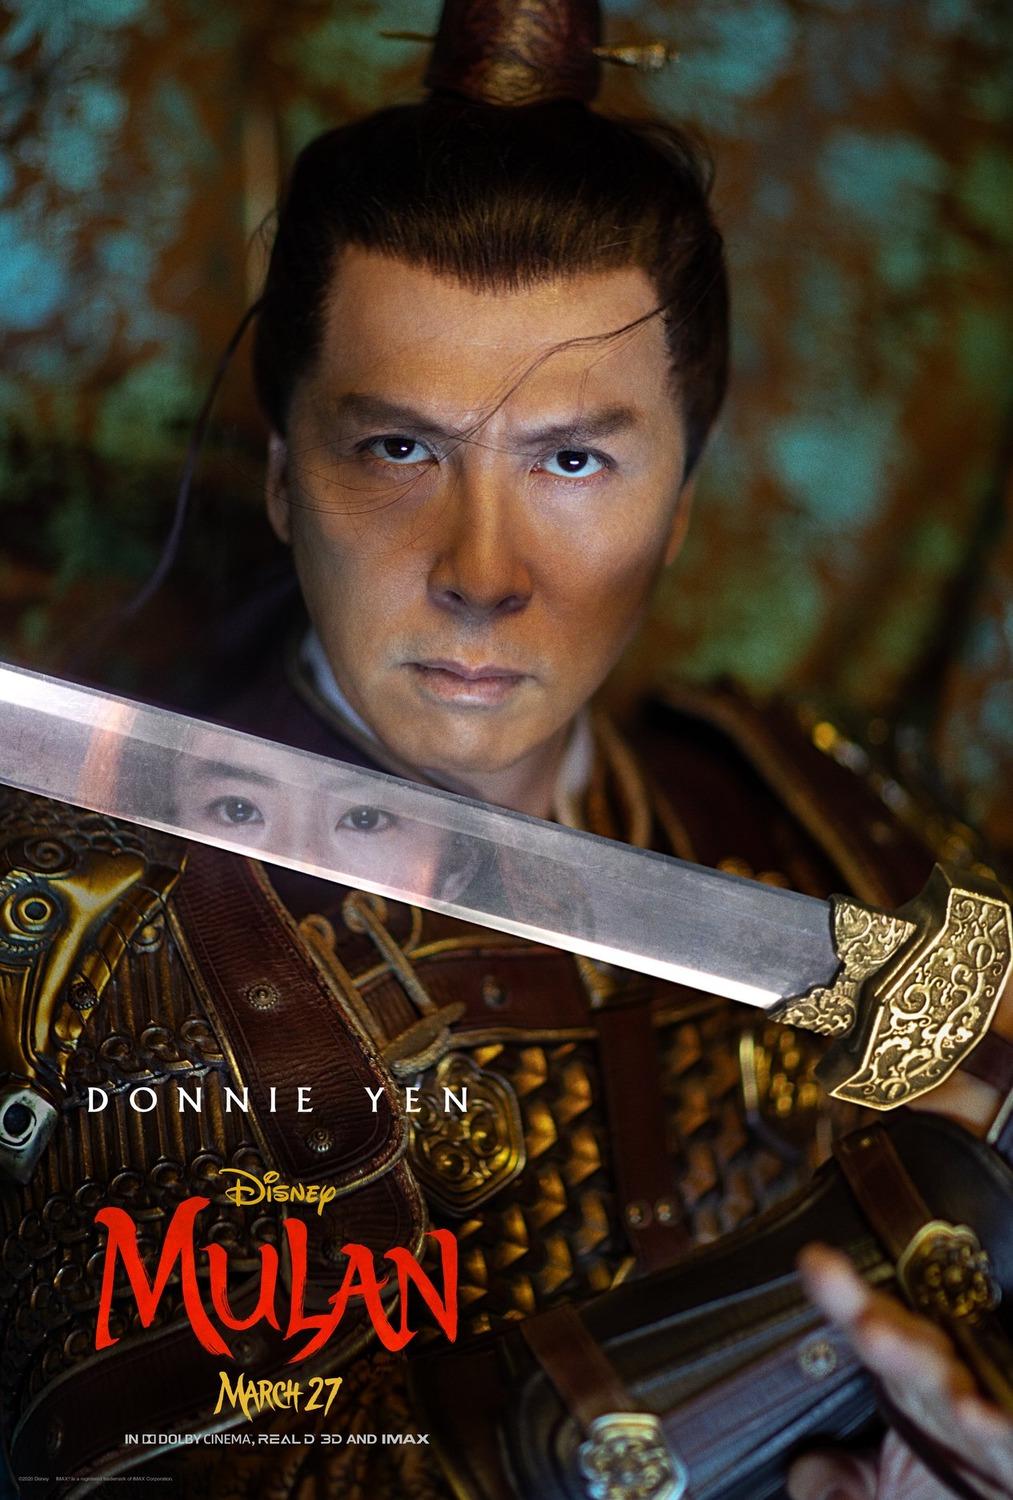 《花木兰》登迪士尼杂志封面 刘亦菲持剑撑地气势足